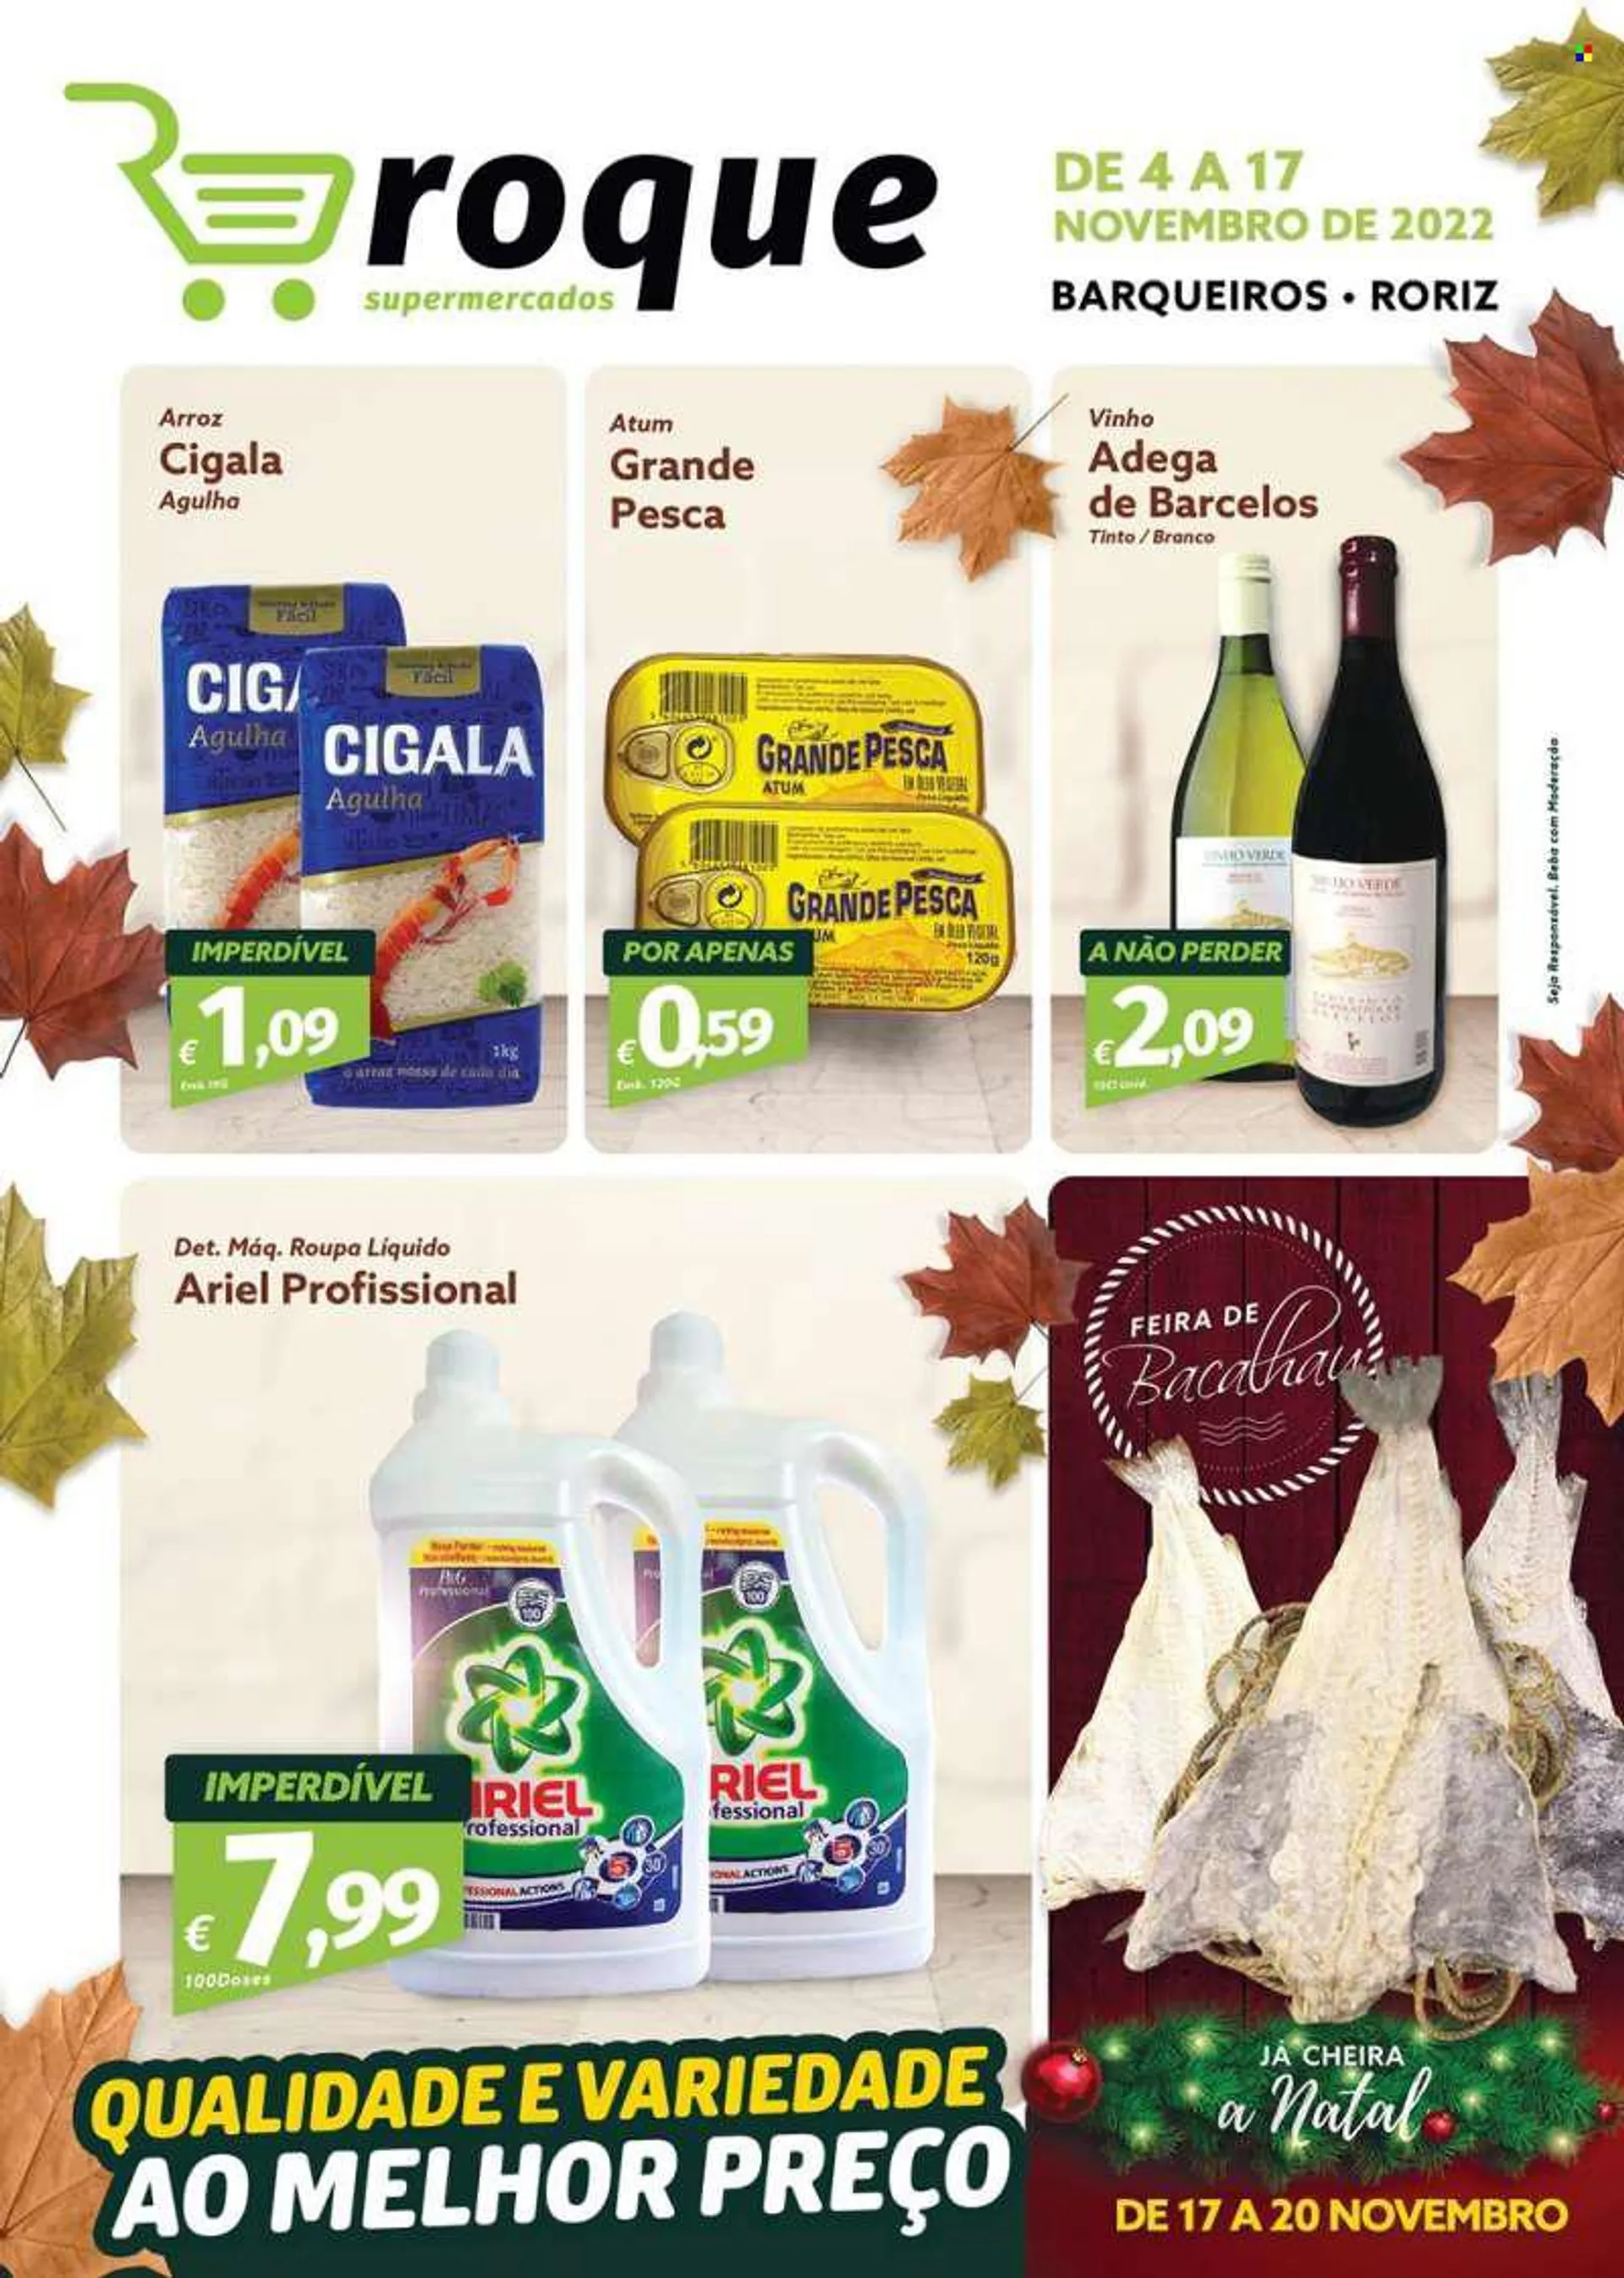 Folheto Roque Supermercados - 4.11.2022 - 17.11.2022 - Produtos em promoção - bacalhau, atum, arroz, vinho, vinho verde, Ariel. Página 1.